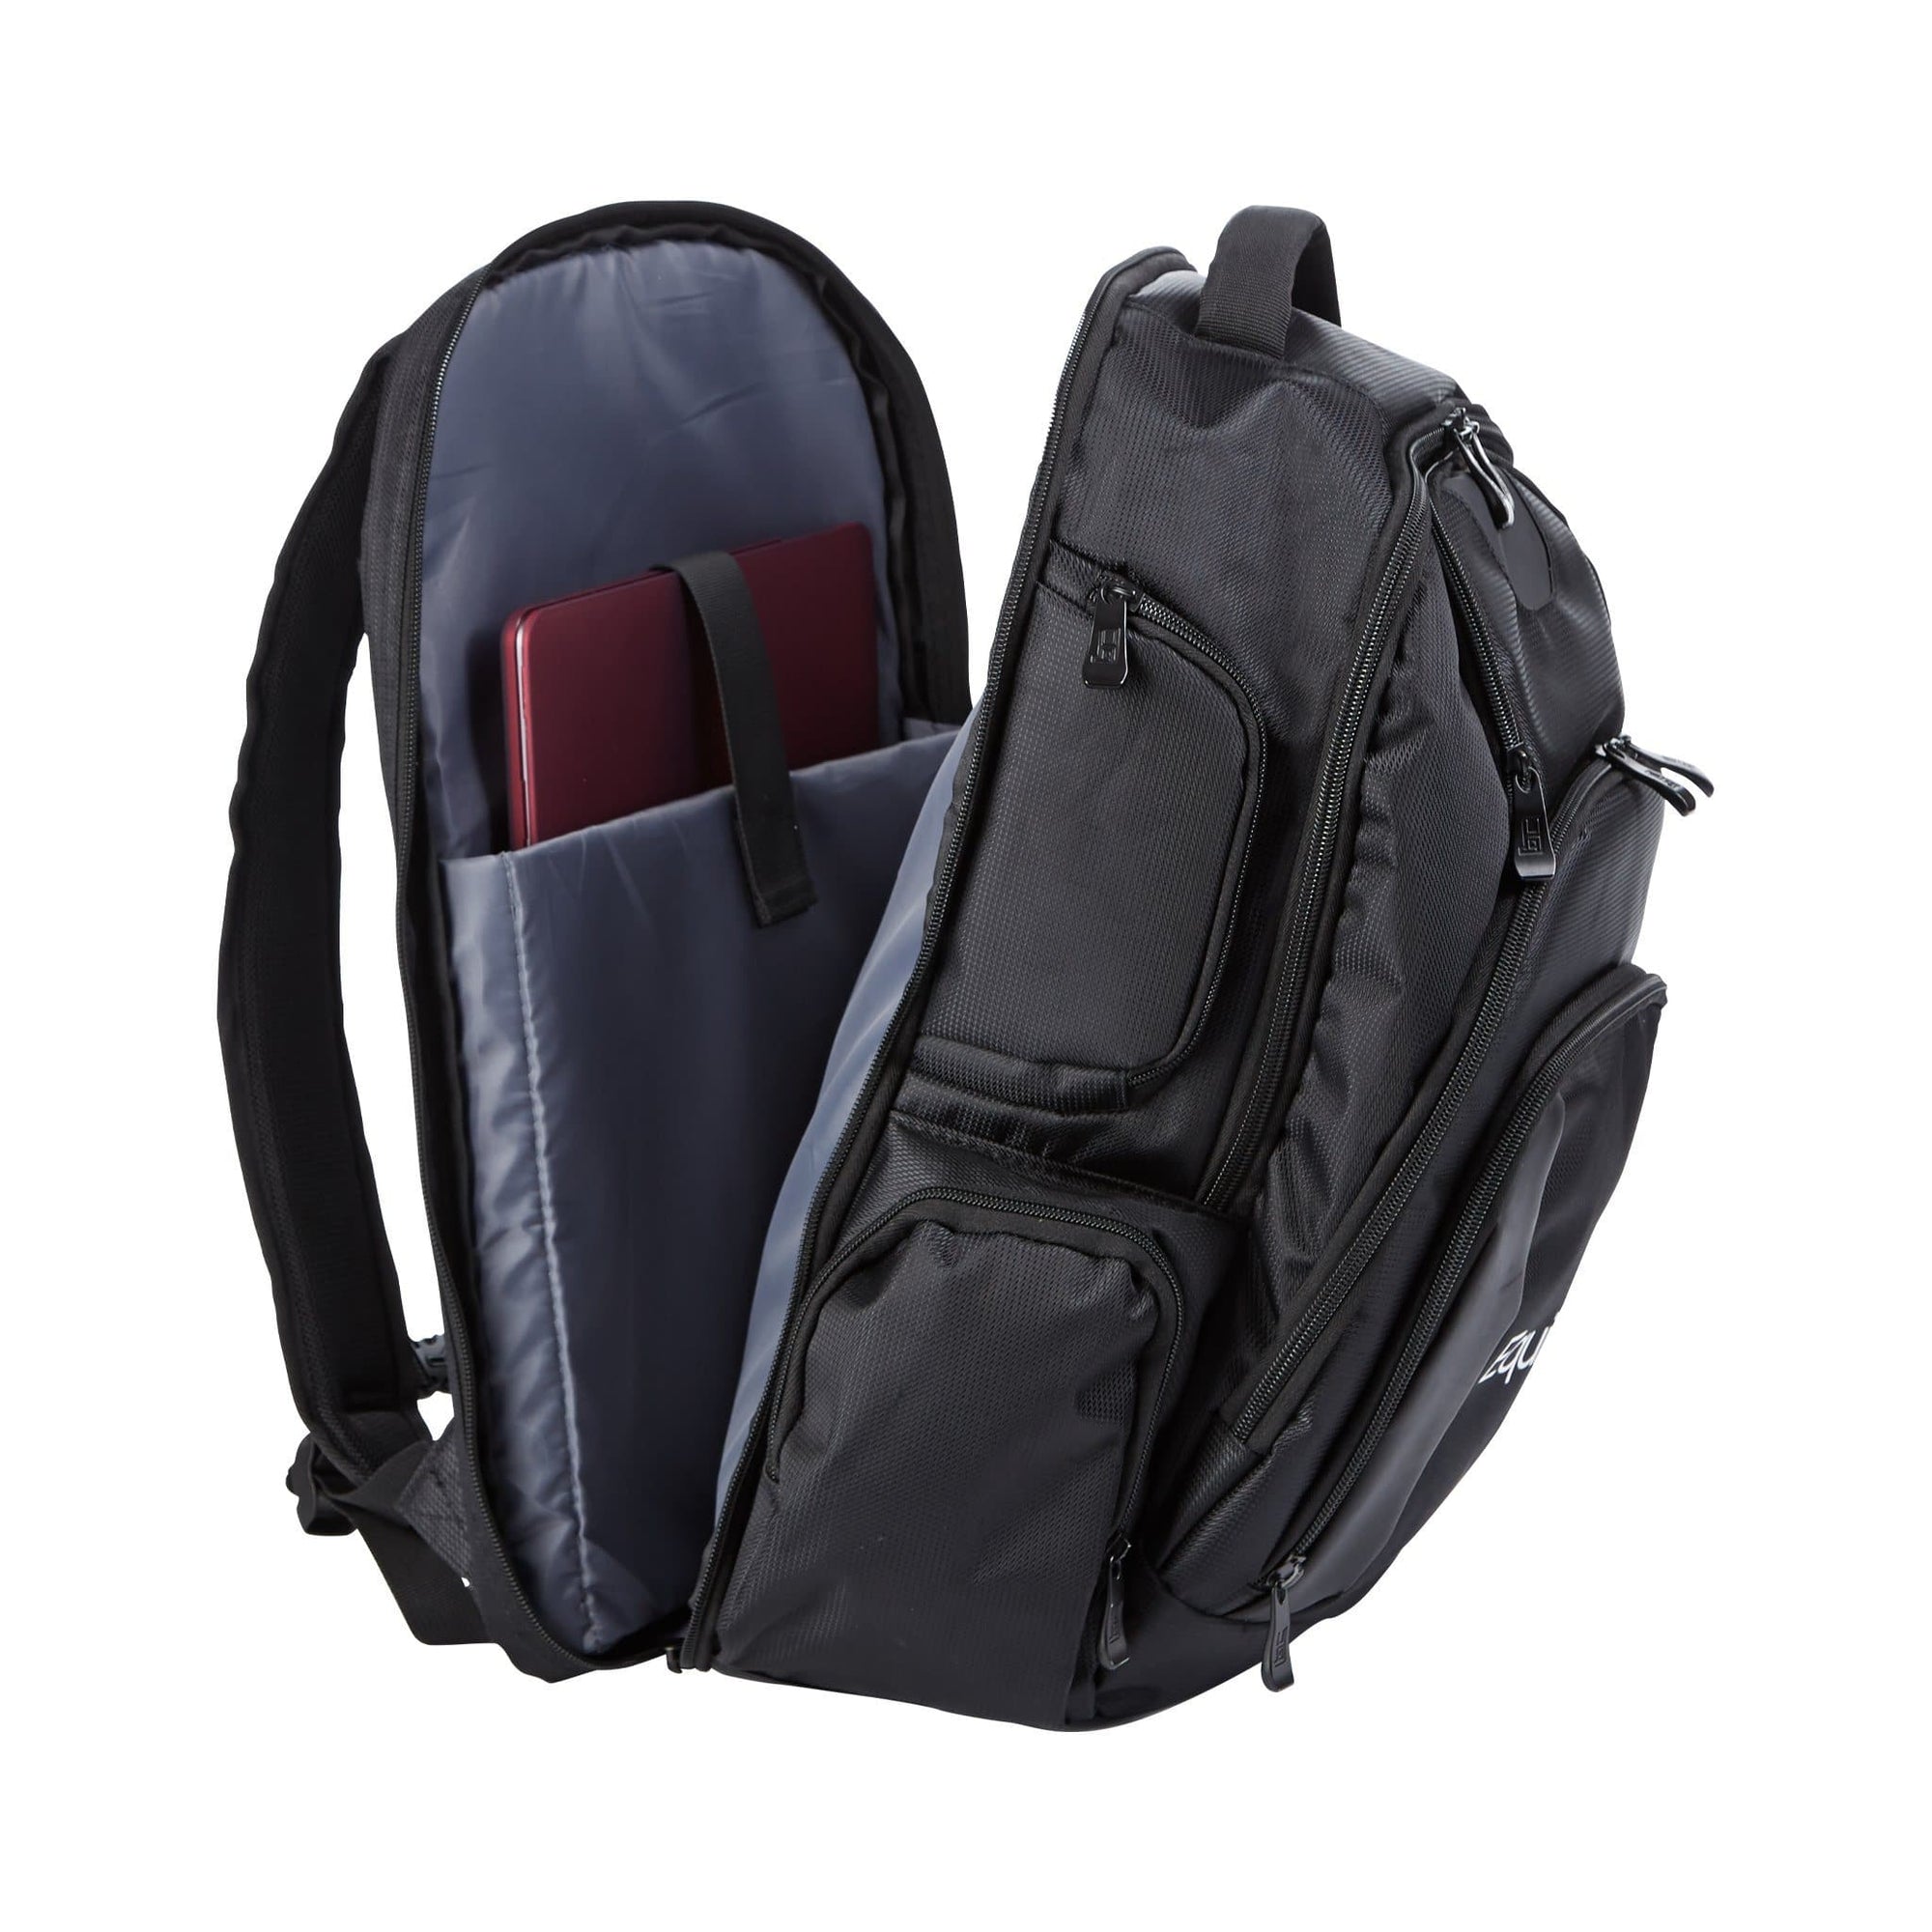 EquiFit Ringside BackPack-Luggage - Backpack-Equifit-Manhattan Saddlery